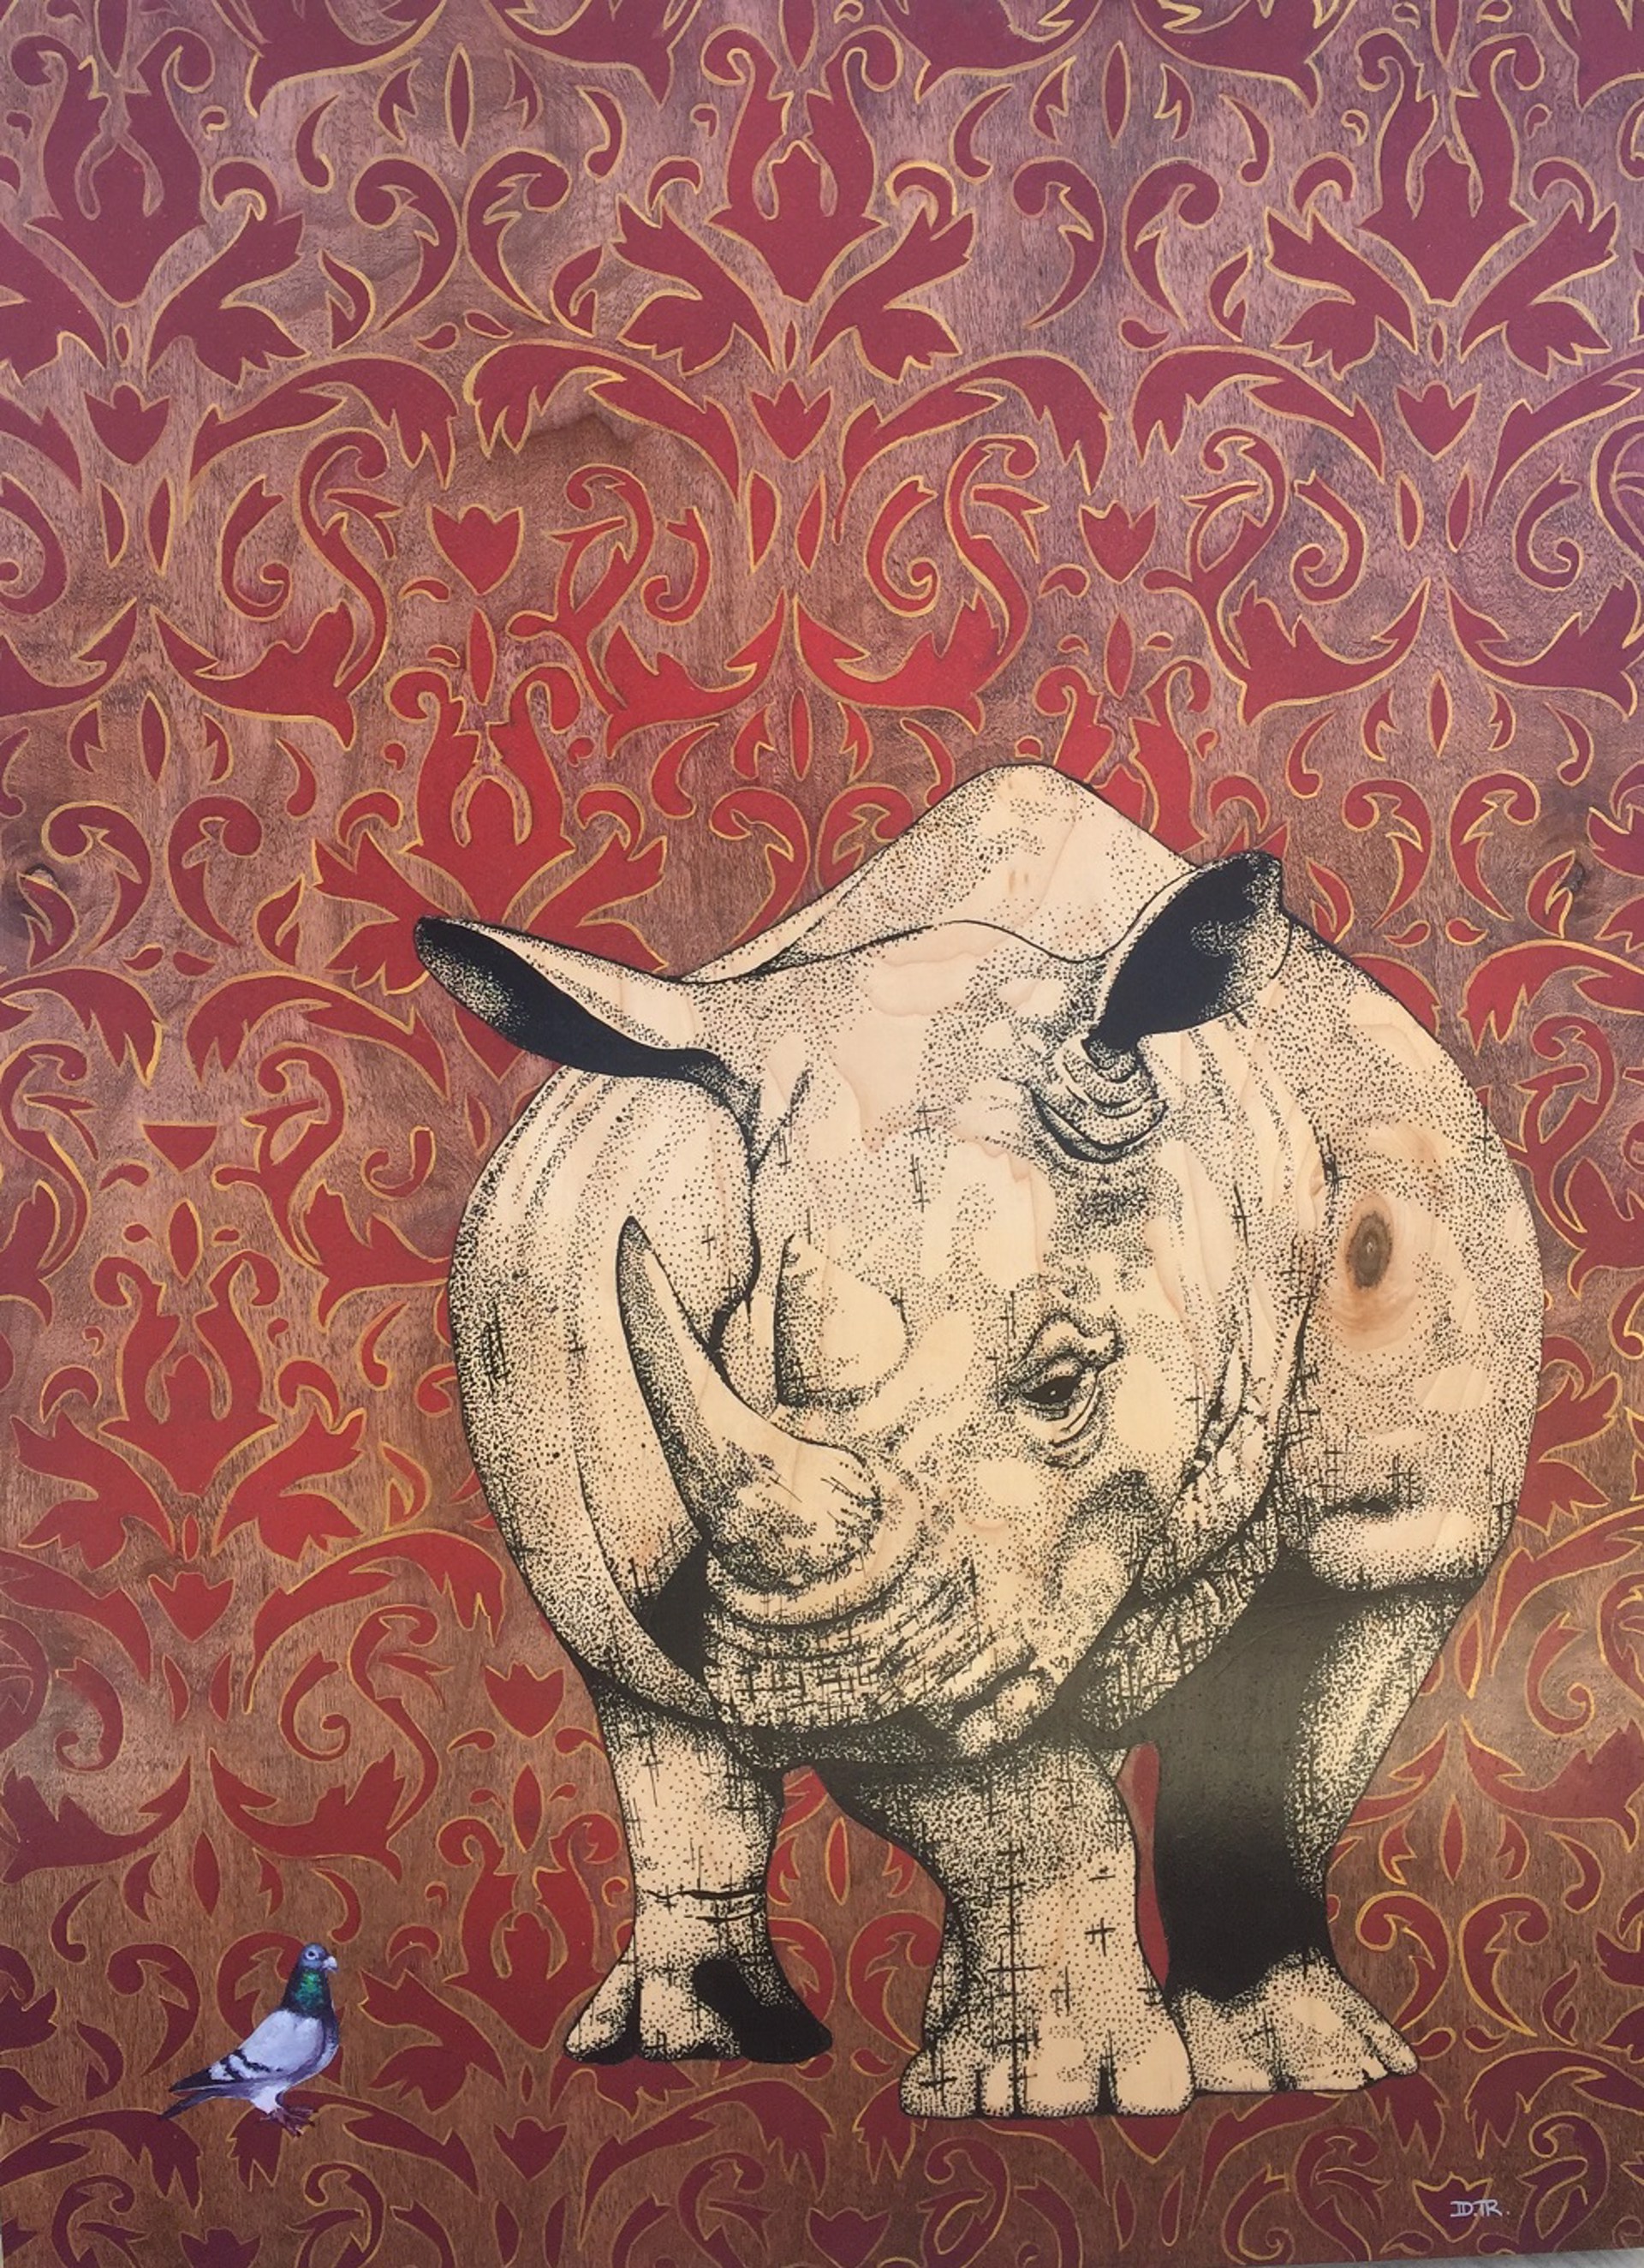 Le Rhino Curleux by Daniel Ryan